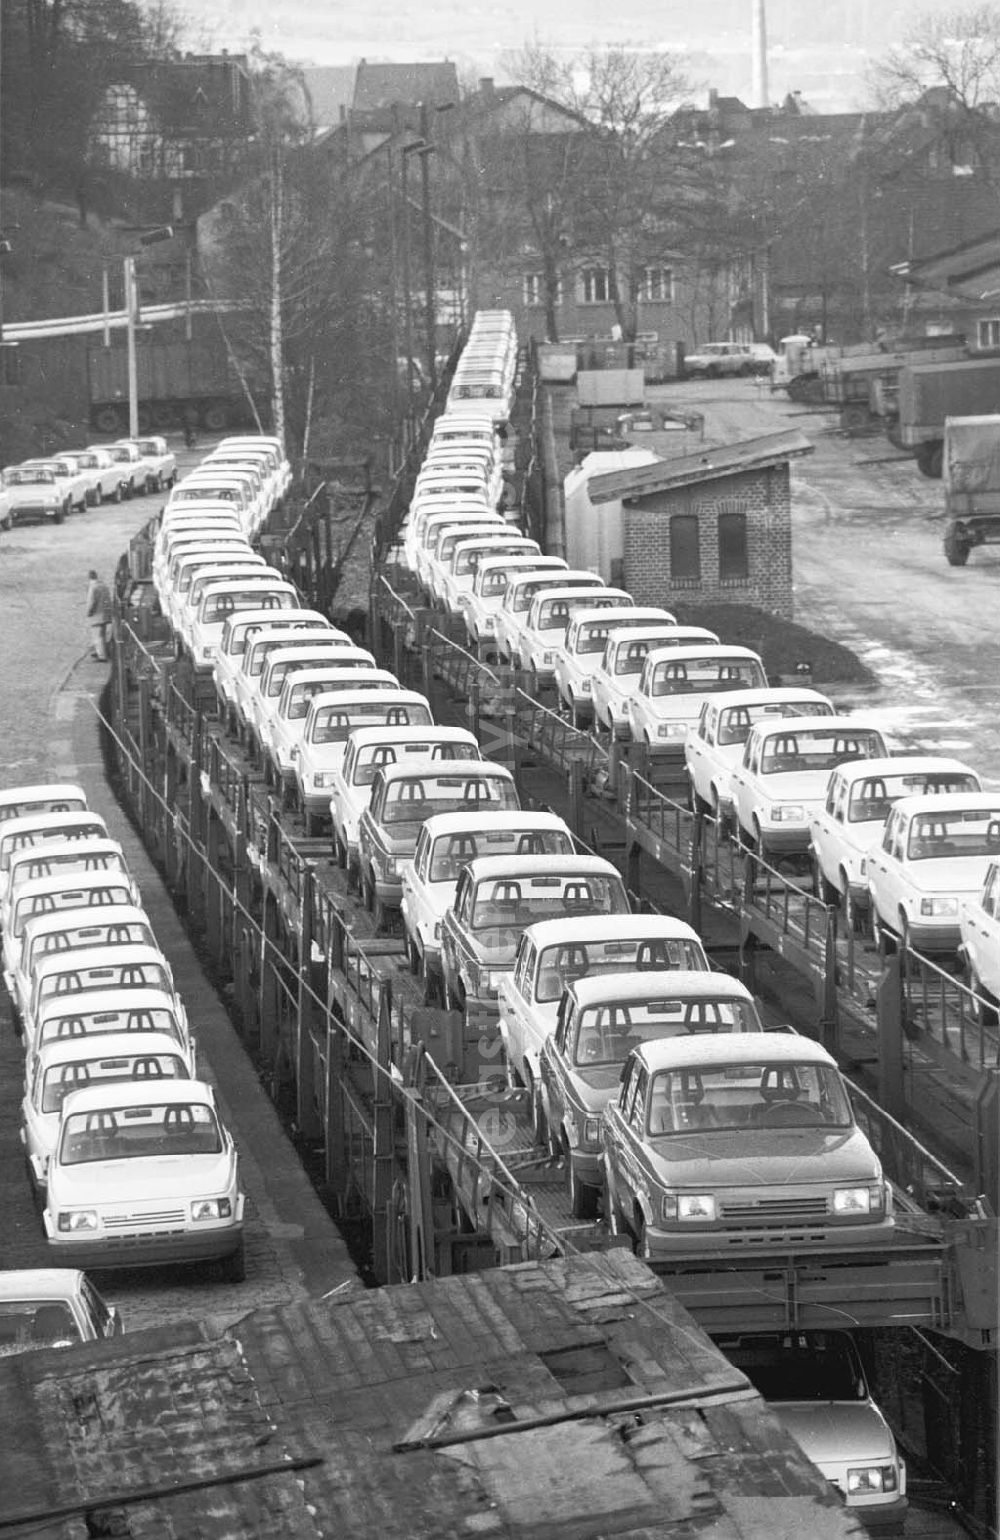 Eisenach: Autos vom Typ Wartburg stehen zum Transport bereit. Die letzte Wartburg-Produktionswoche hat begonnen.